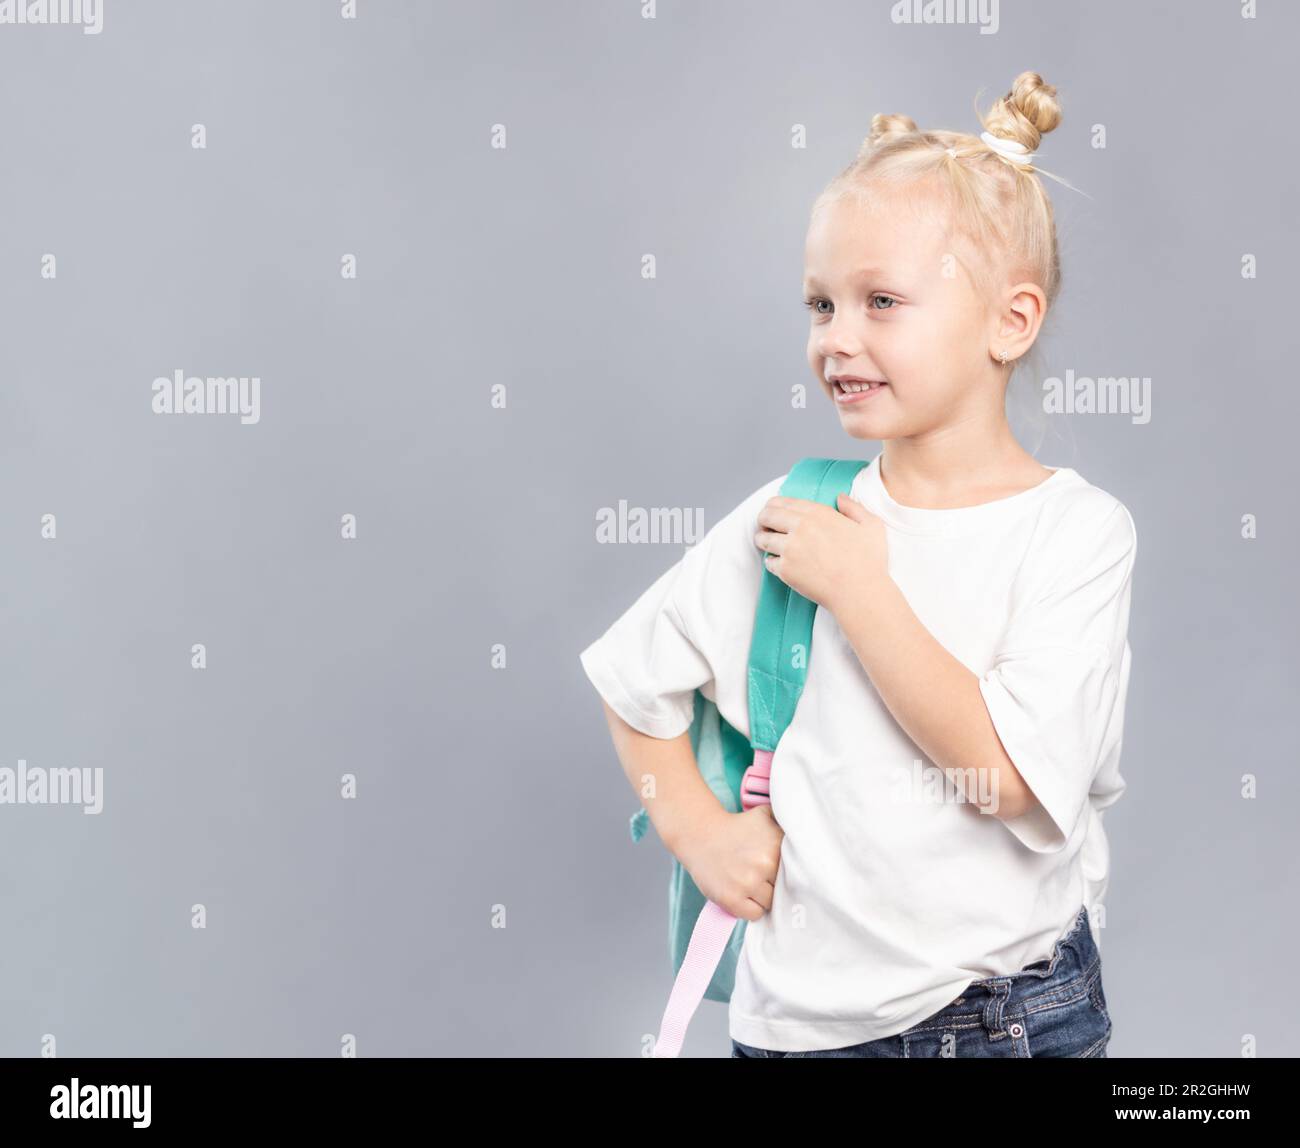 Ein Mädchen der Grundschule lächelt und hält einen Rucksack, ein Kind mit blonden Haaren und dreckigen Brötchen, gekleidet in einem weißen T-Shirt, das seitlich auf grauem Hintergrund aussieht Stockfoto